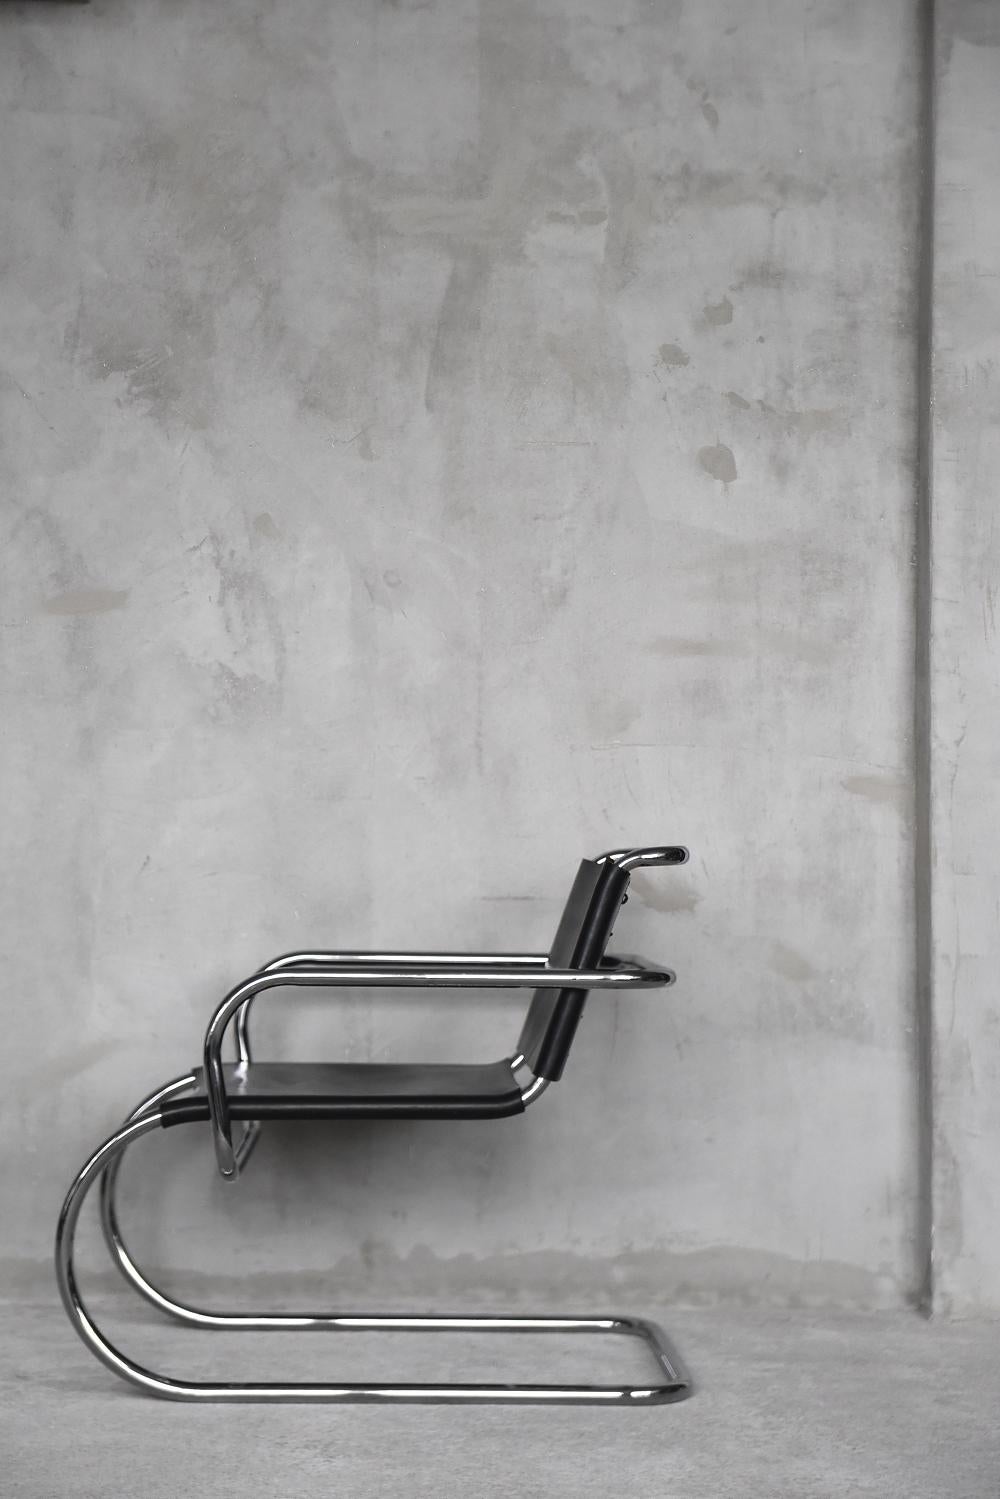 Dieser außergewöhnlich seltene Stuhl mit Armlehnen wurde 1933 von Franco Albini entworfen und in den 1950er Jahren von Tecta hergestellt. Das Gestell besteht aus verchromtem Stahlrohr, während Sitz und Rückenlehne aus echtem Leder mit schöner